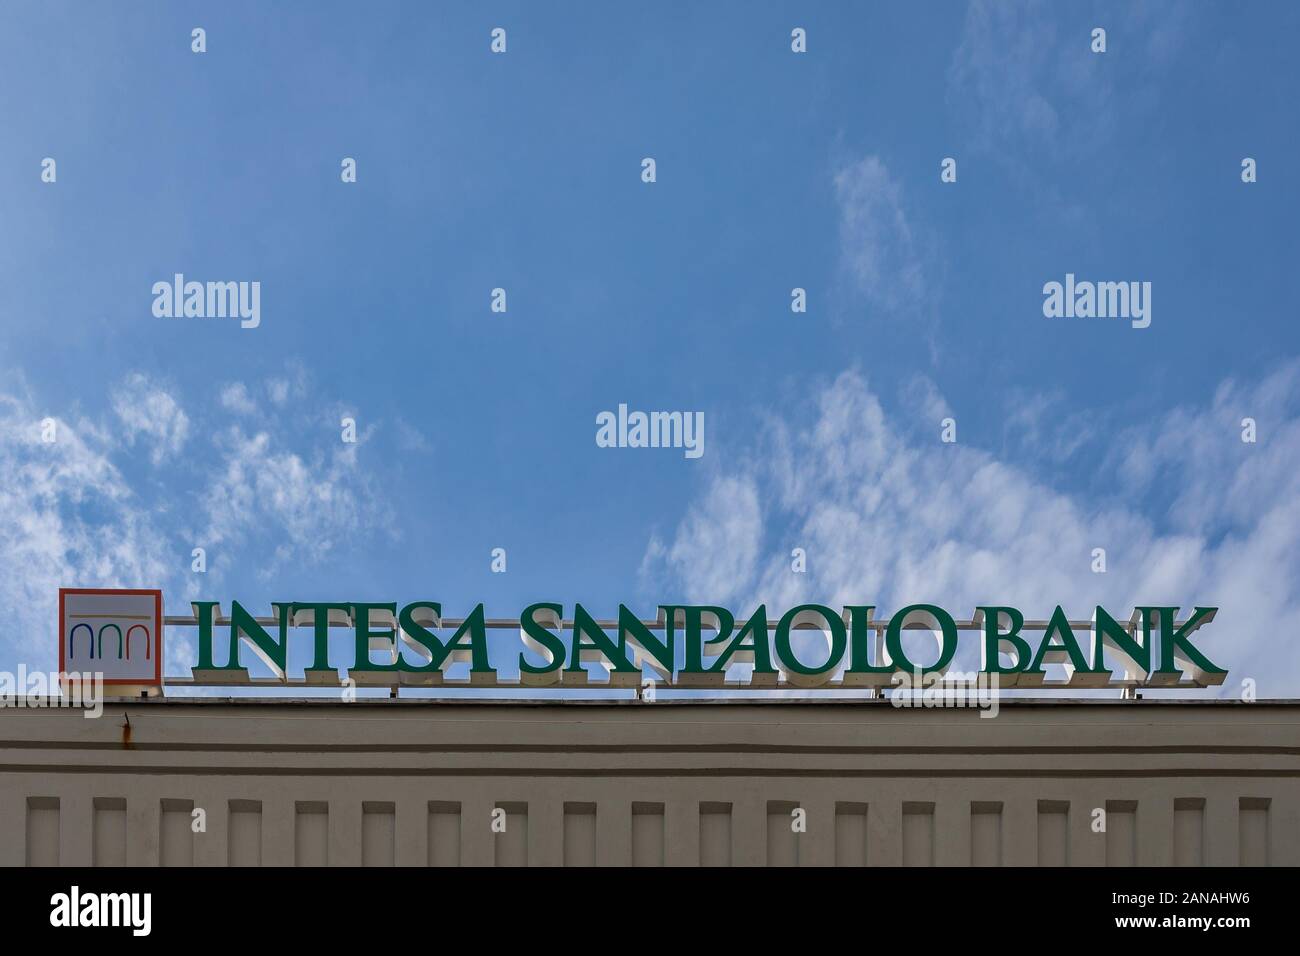 Banca Intesa Sanpaolo Immagini E Fotos Stock Alamy